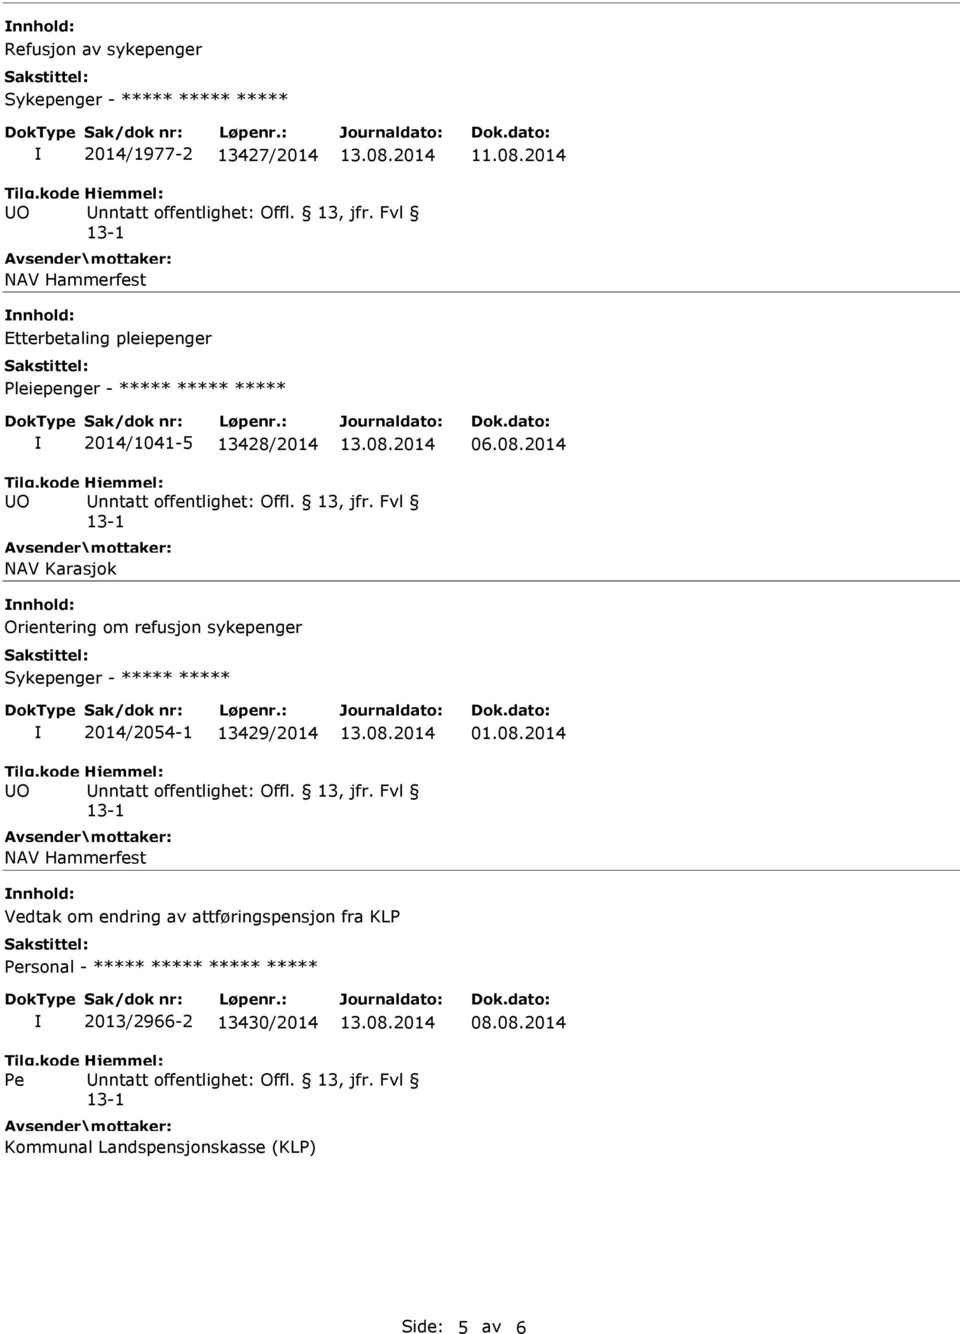 2014 NAV Karasjok nnhold: Orientering om refusjon sykepenger Sykepenger - ***** ***** 2014/2054-1 13429/2014 01.08.